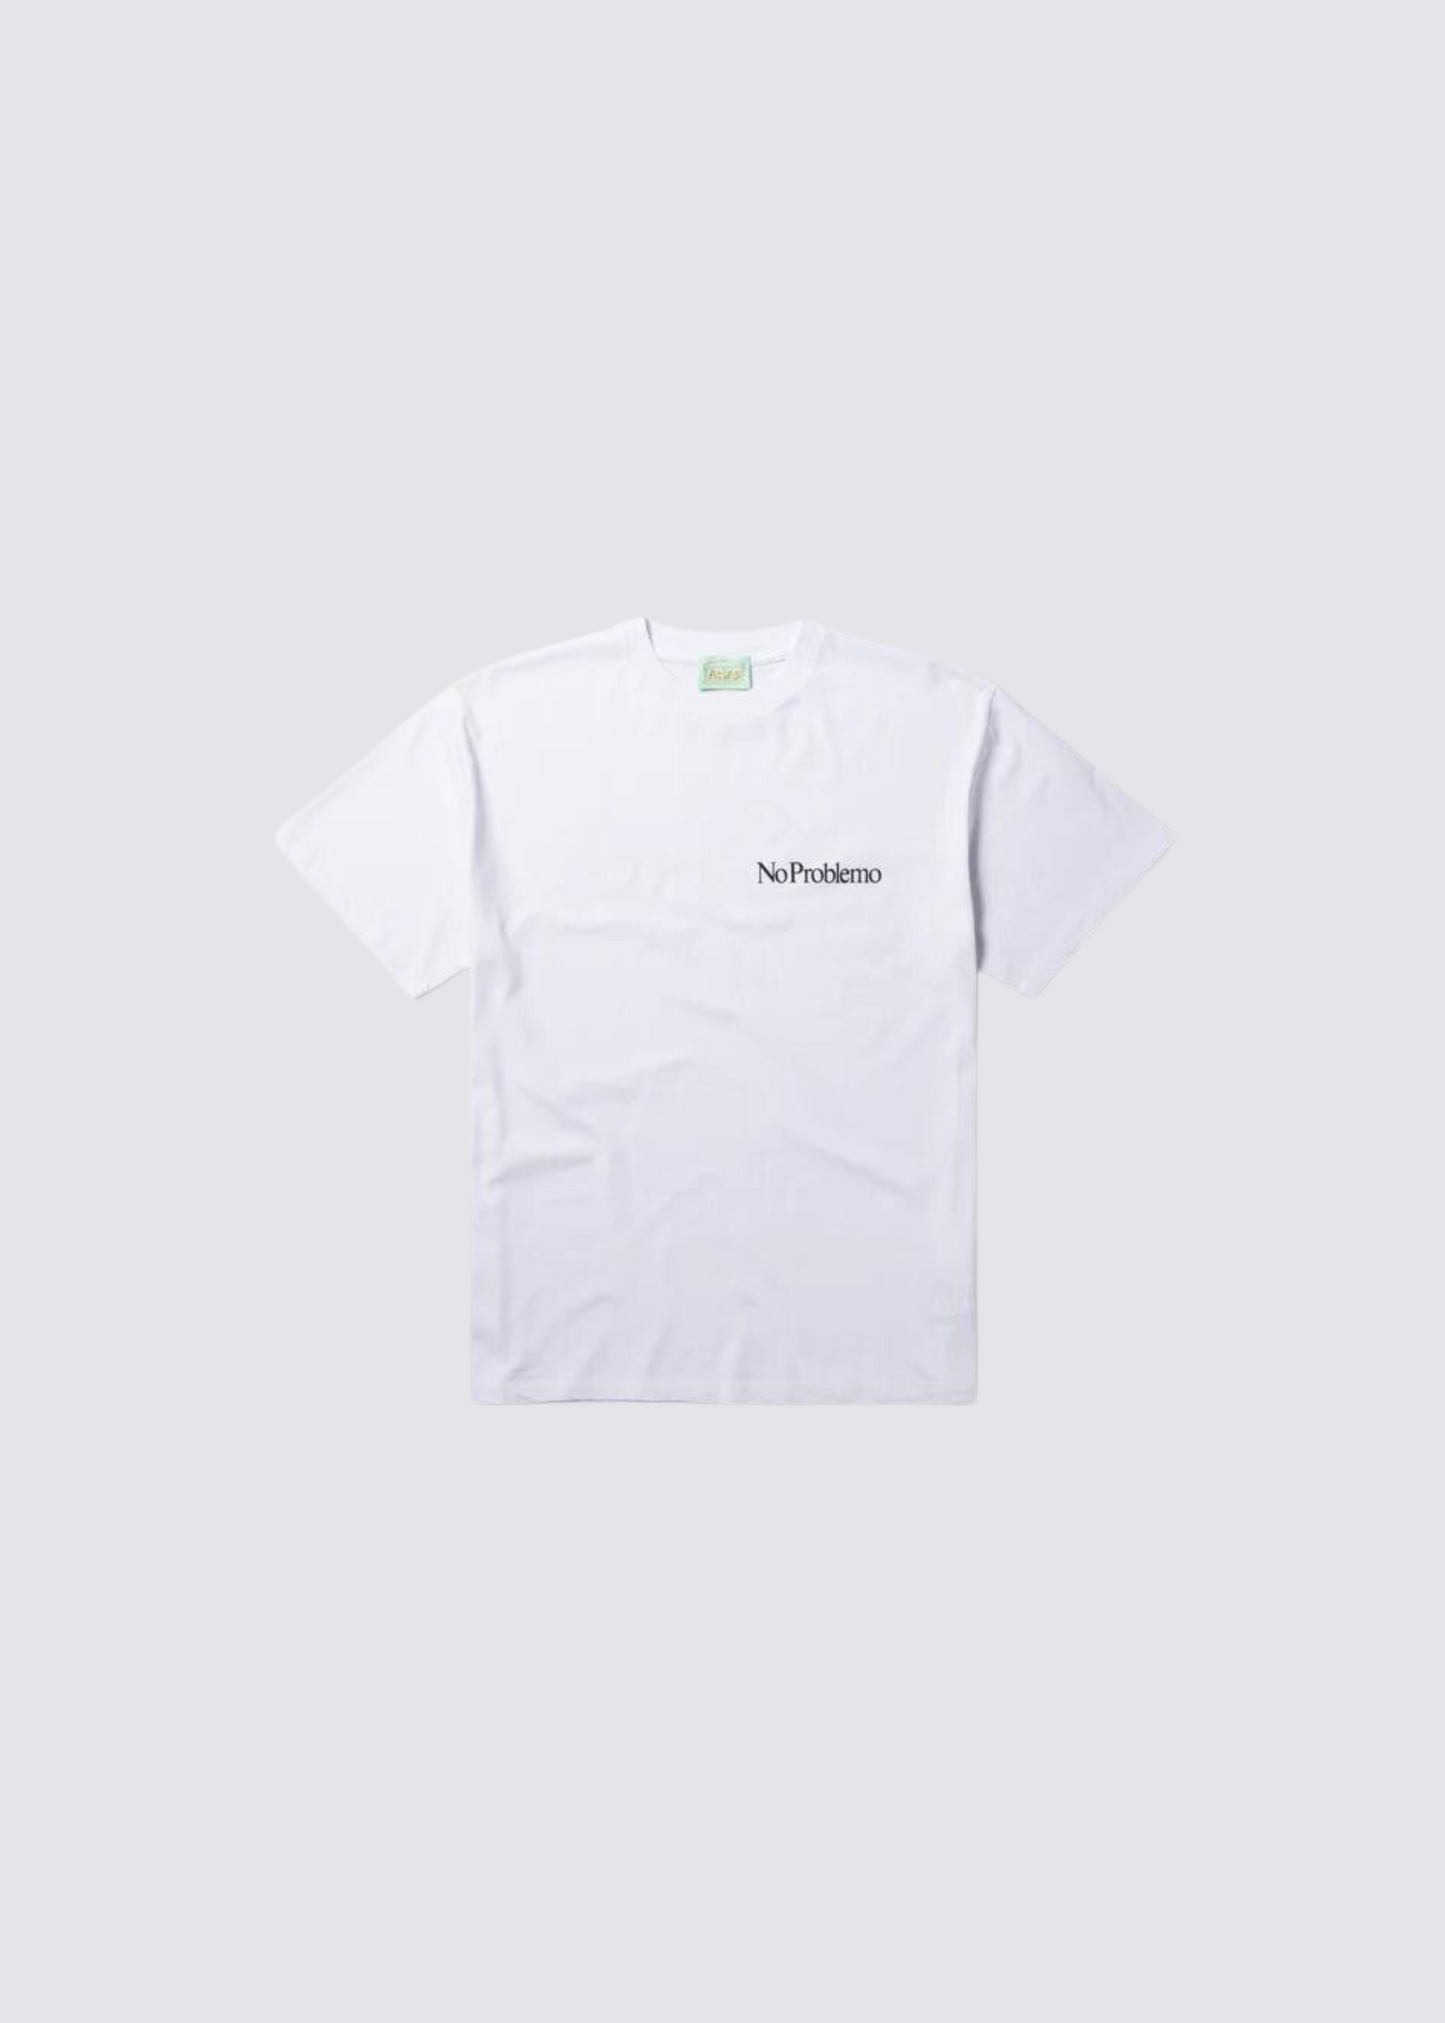 Mini No Problemo, White, T-Shirt